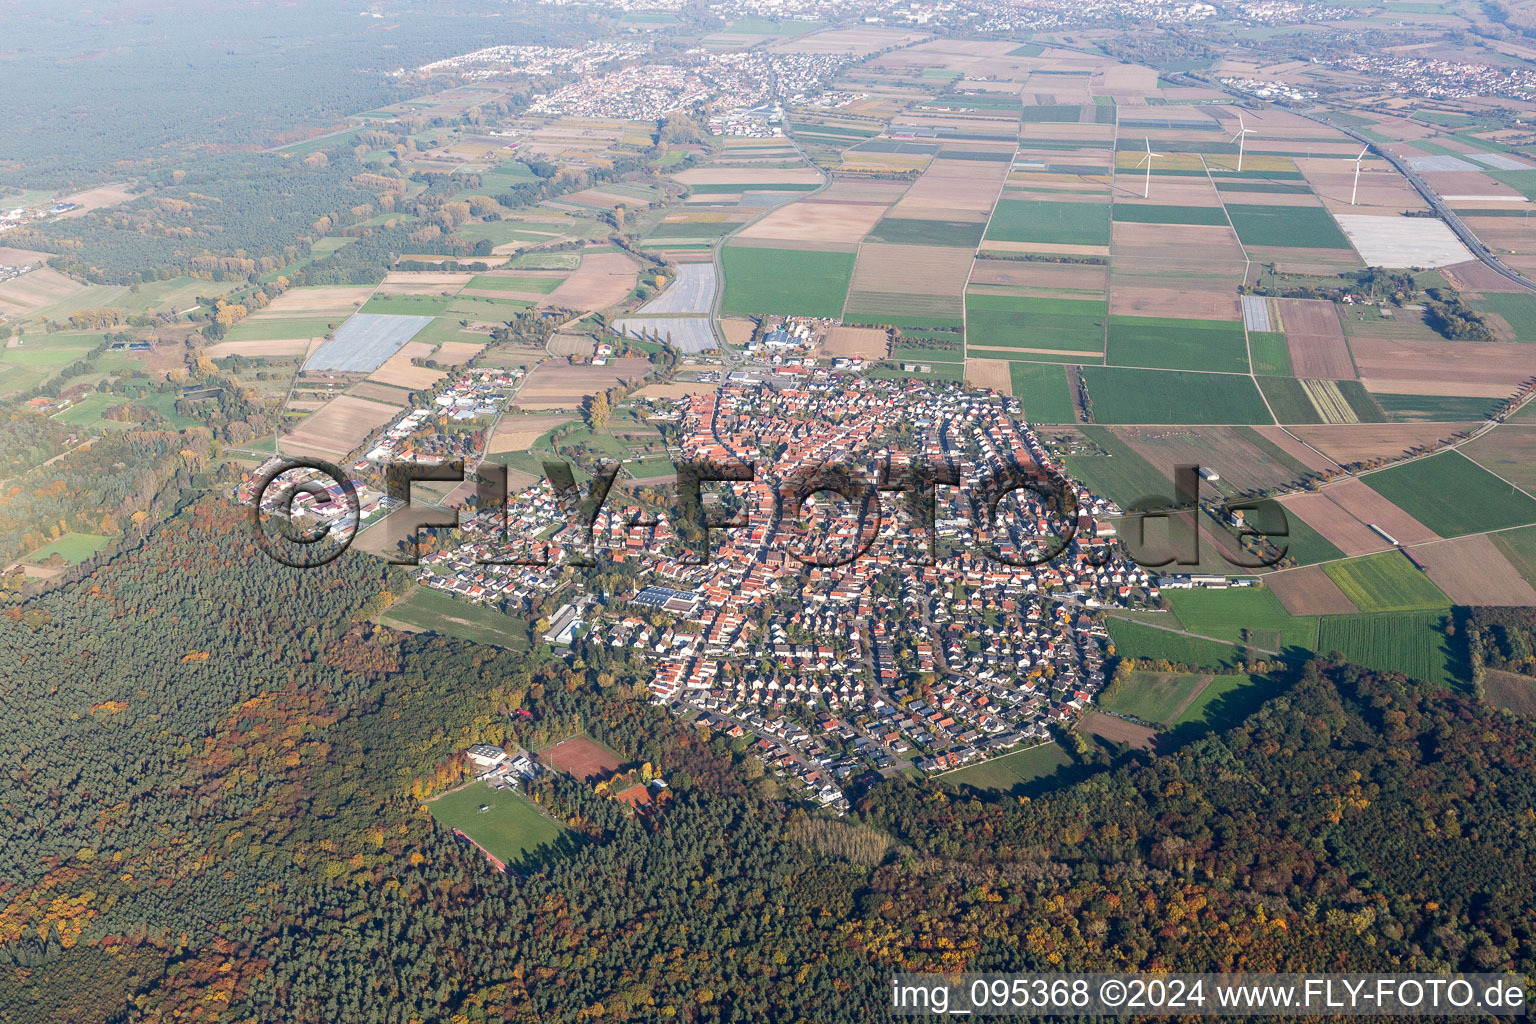 Vue aérienne de Vue des rues et des maisons des quartiers résidentiels à Harthausen dans le département Rhénanie-Palatinat, Allemagne